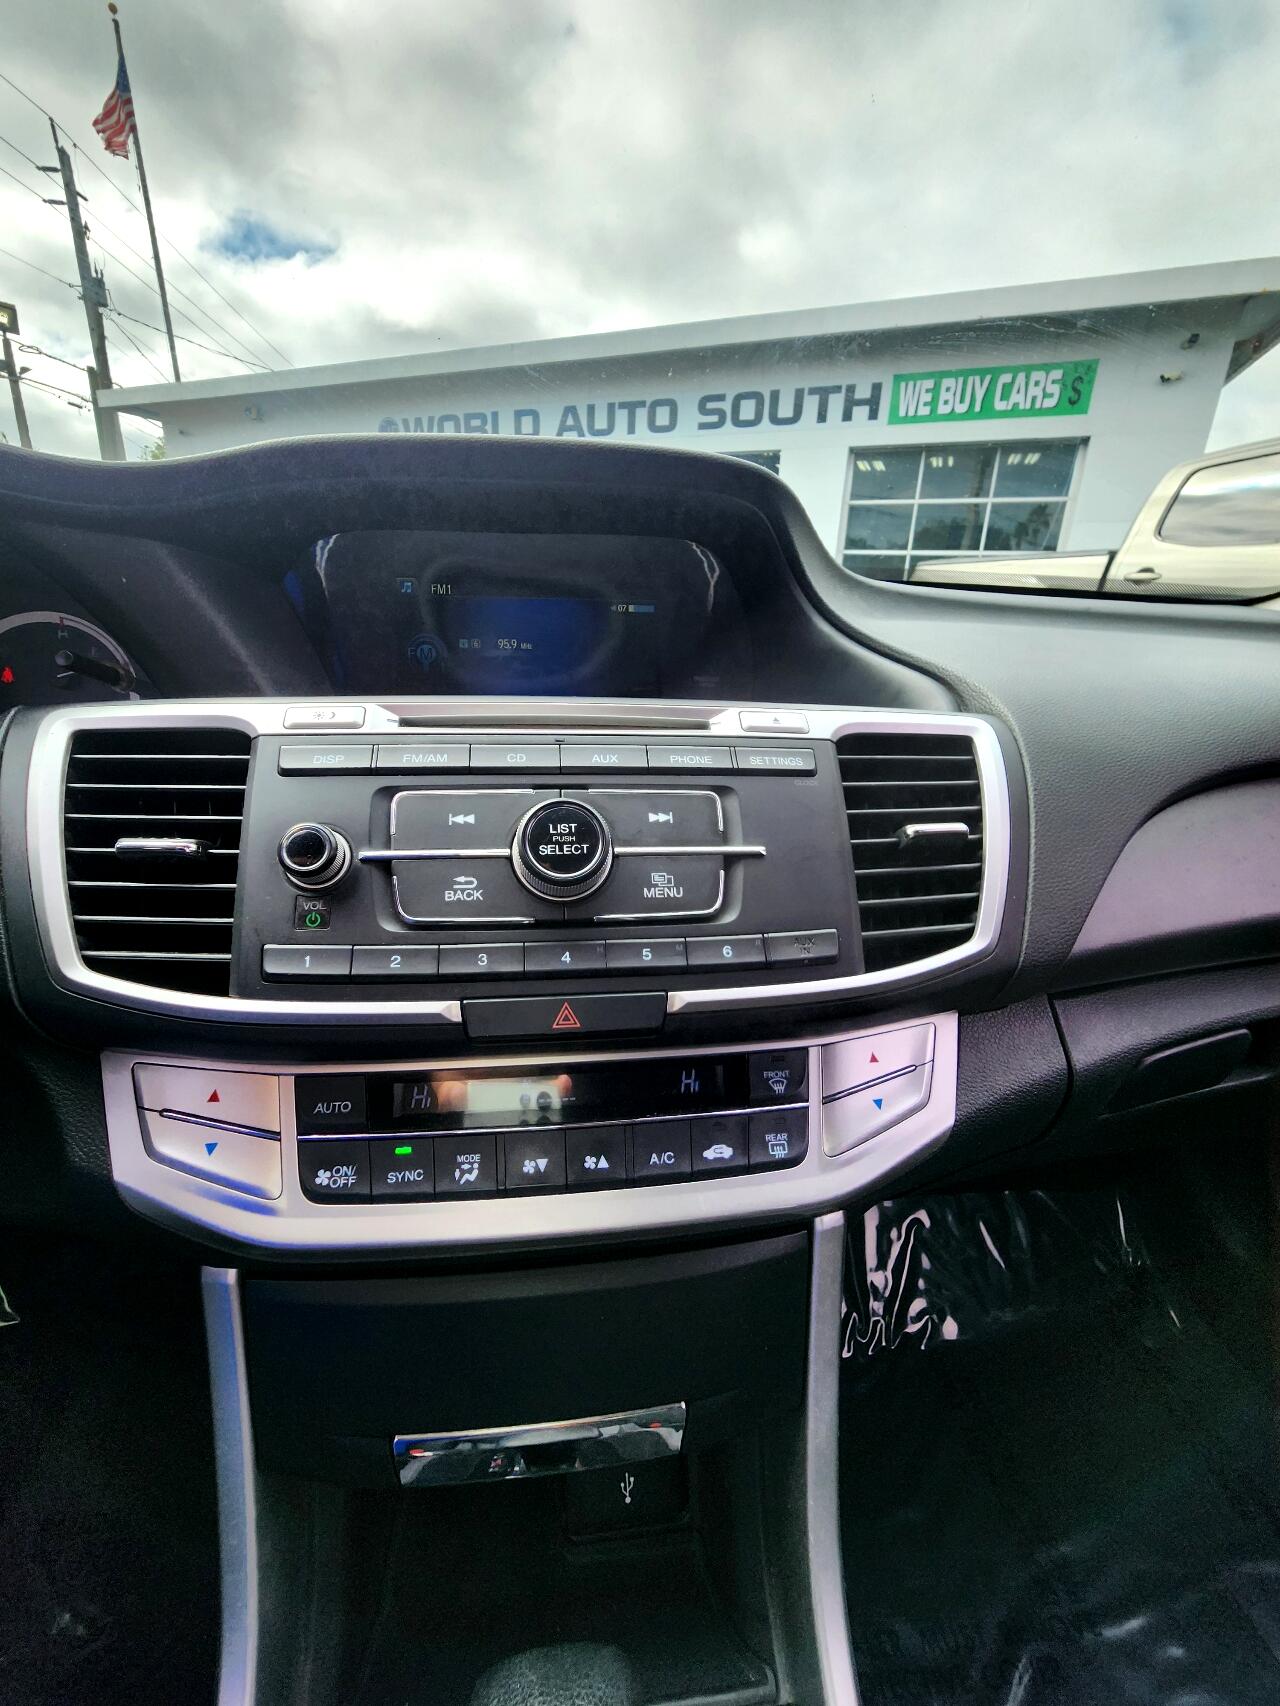 2015 HONDA Accord Sedan - $13,999